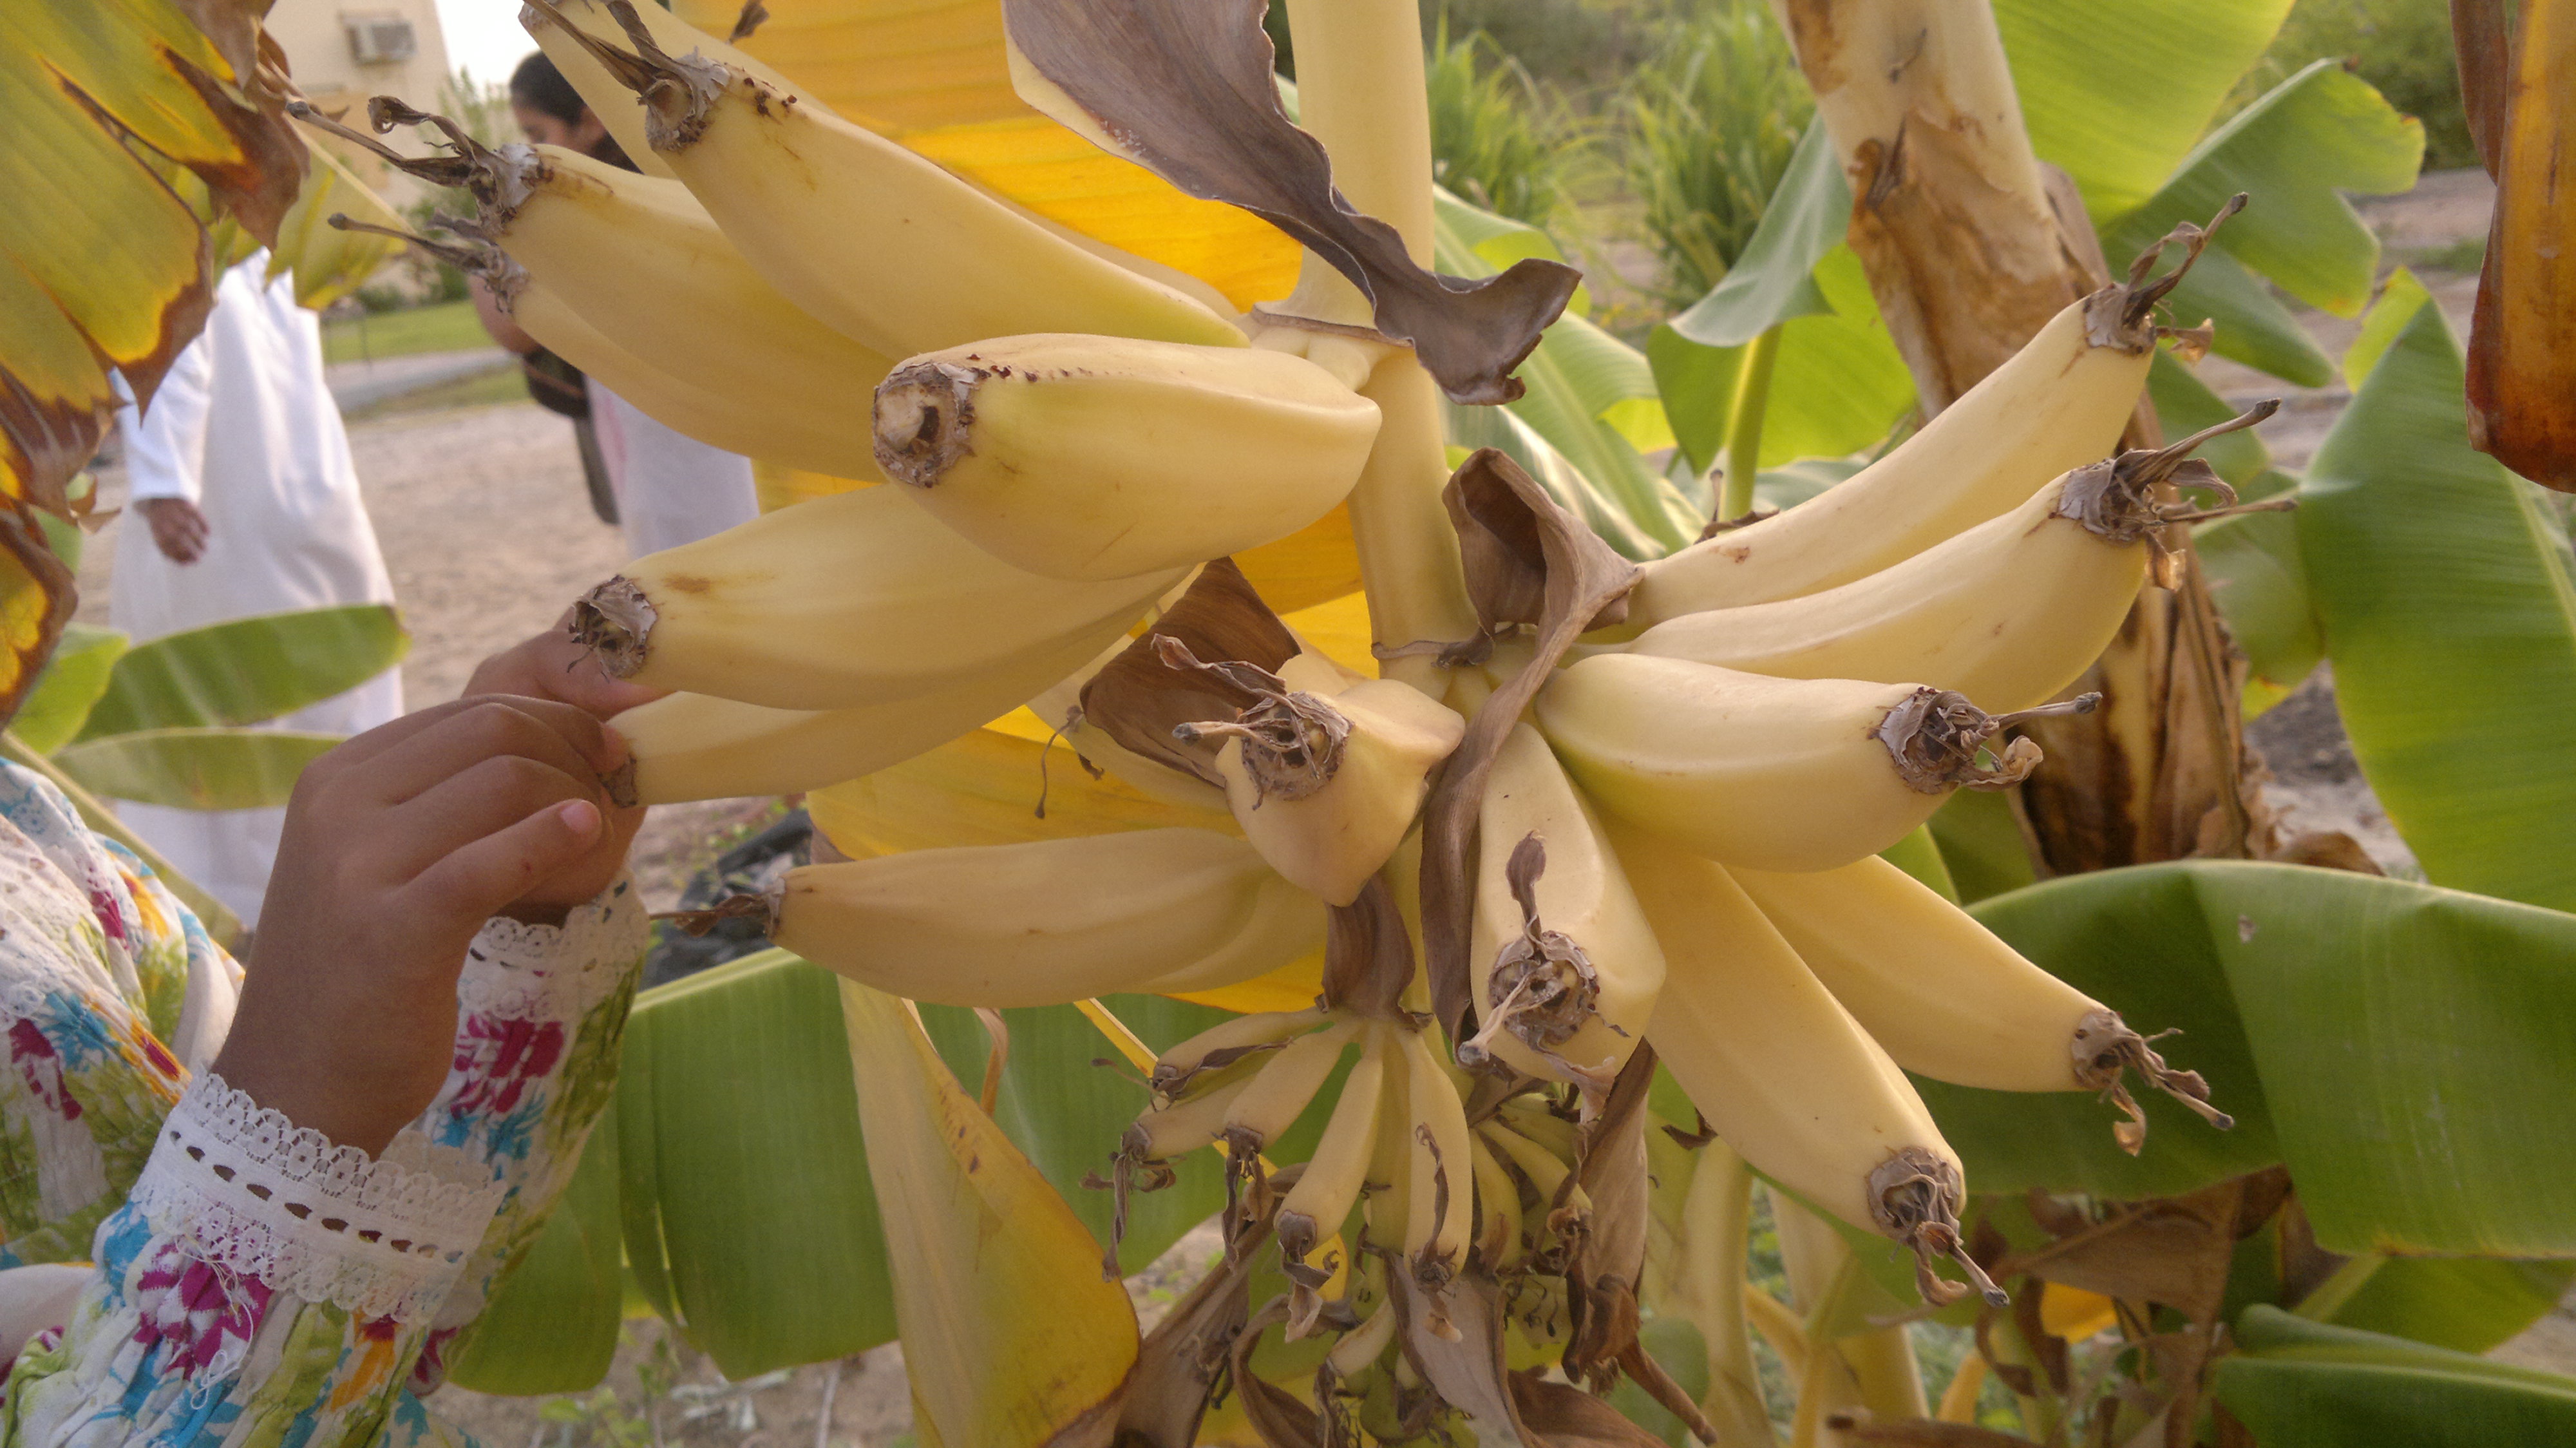 Banana tree, Banana, Fruit, Picking, Tree, HQ Photo